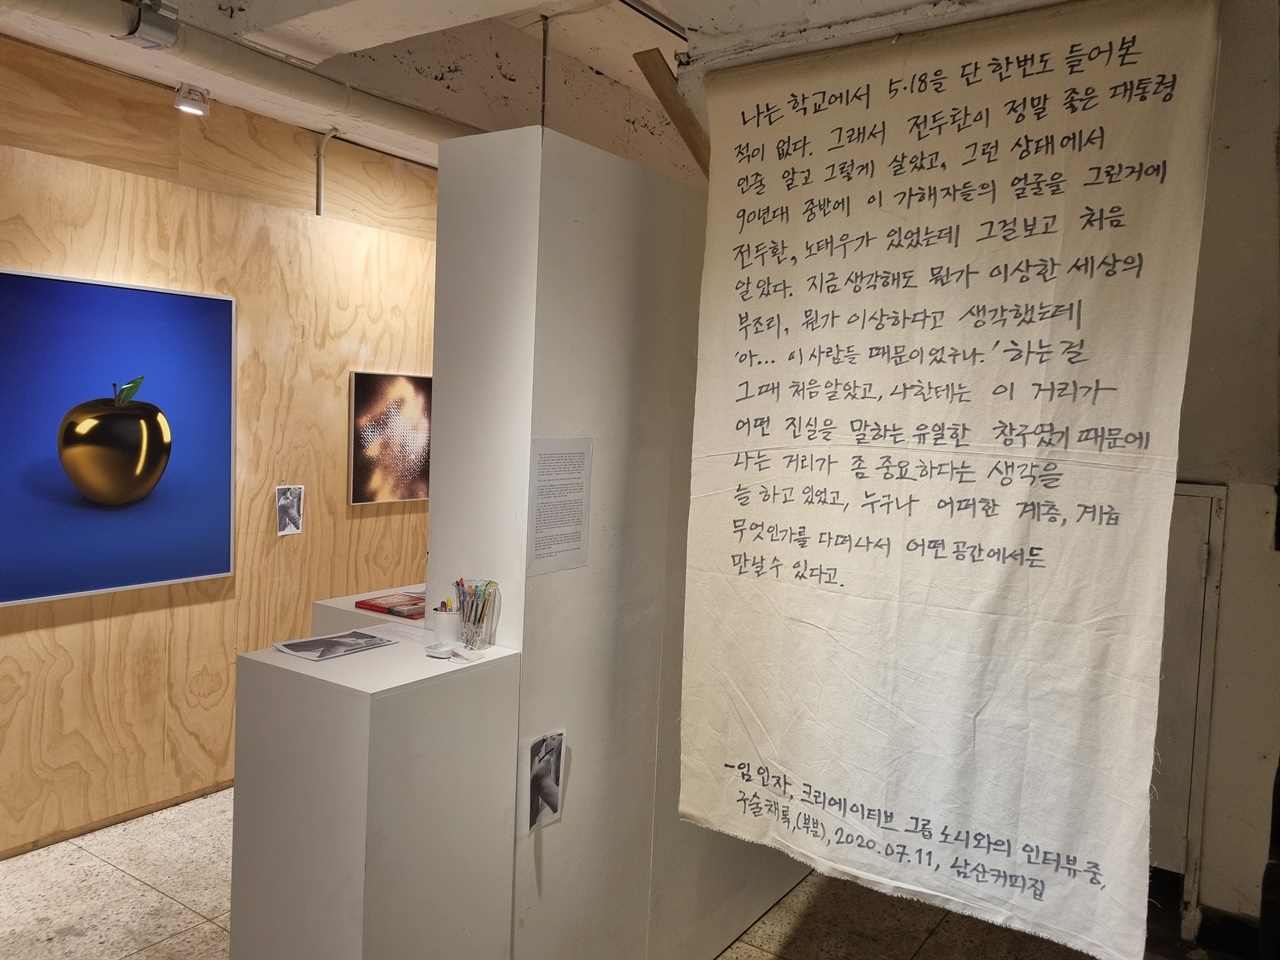 광주 대안공간 '산수싸리'에서 <하나에서 열의 초상으로> 전시가 열리고 있다.